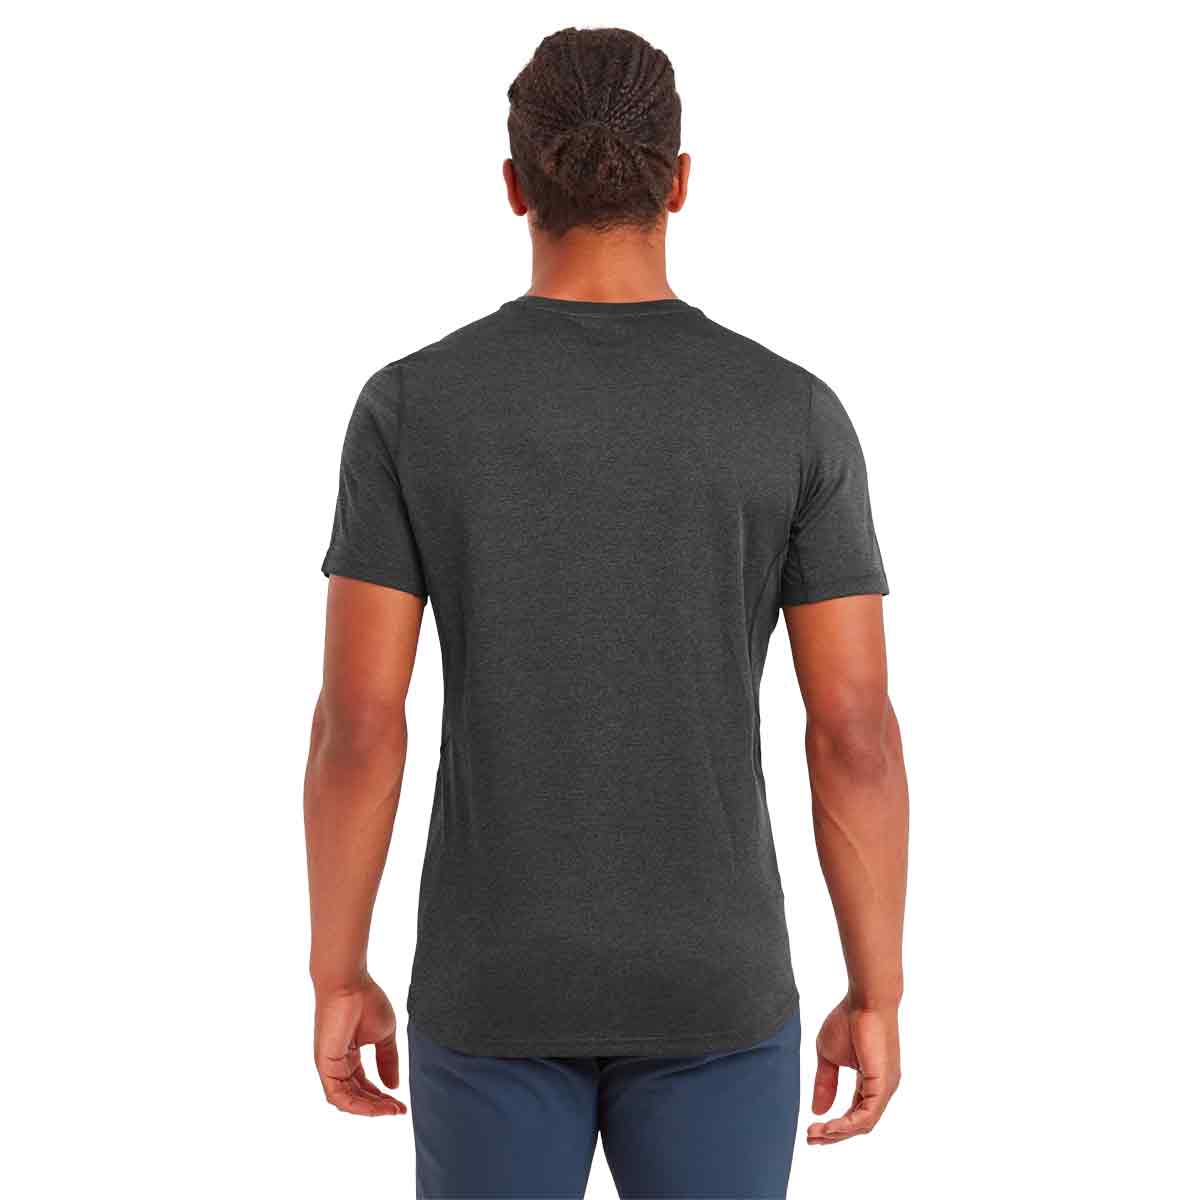 Montane Mens Dart T-Shirt - John Bull Clothing